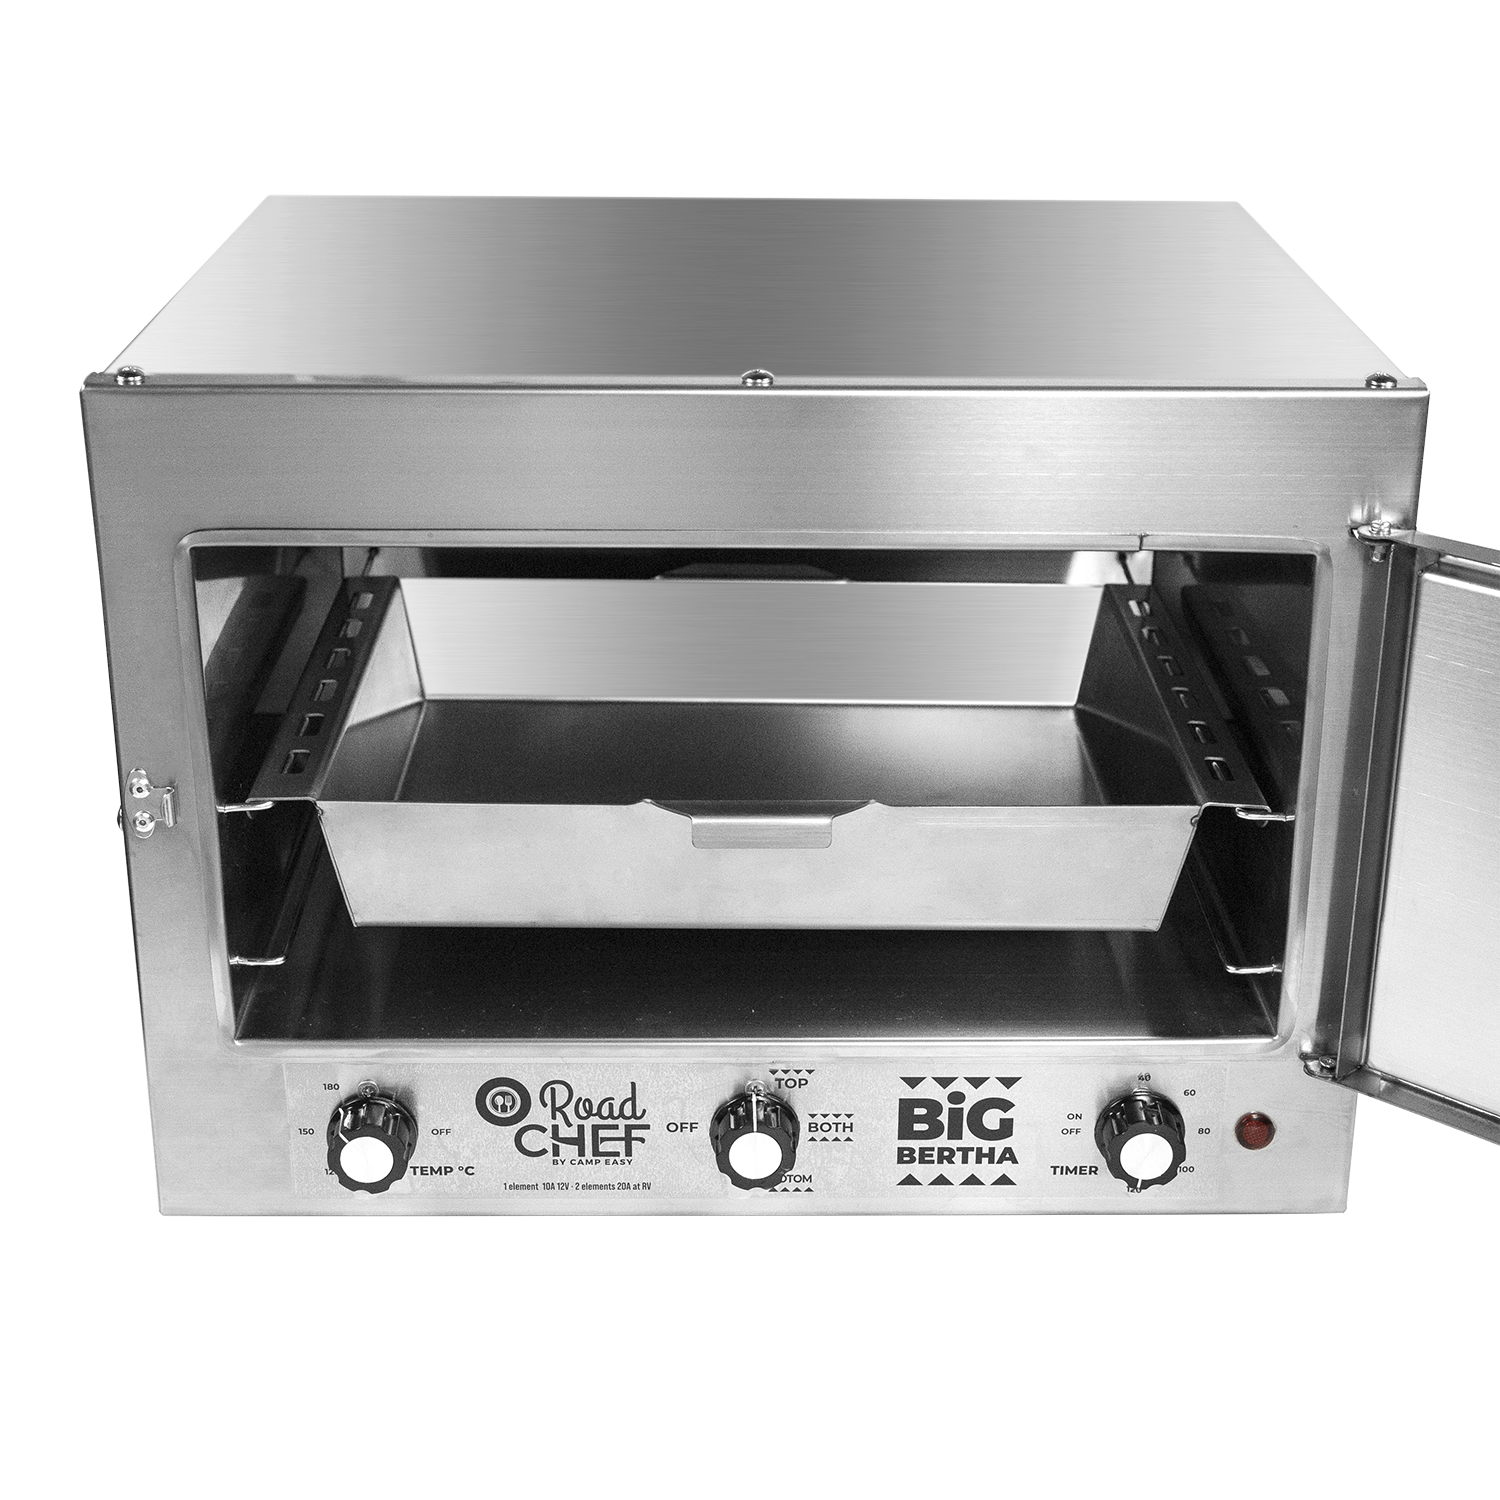 Road Chef Big Bertha 12v Oven 4x4 Mega World Online 43 Off